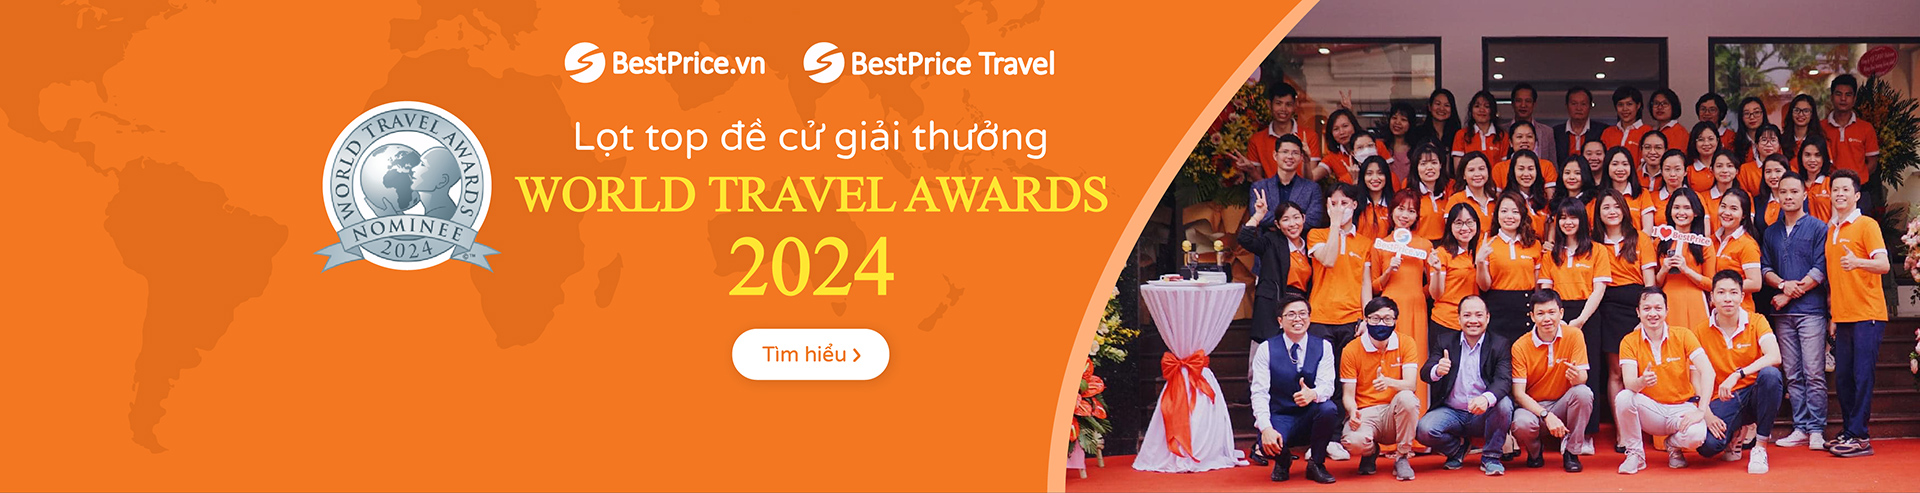 World Travel Awards 2024 